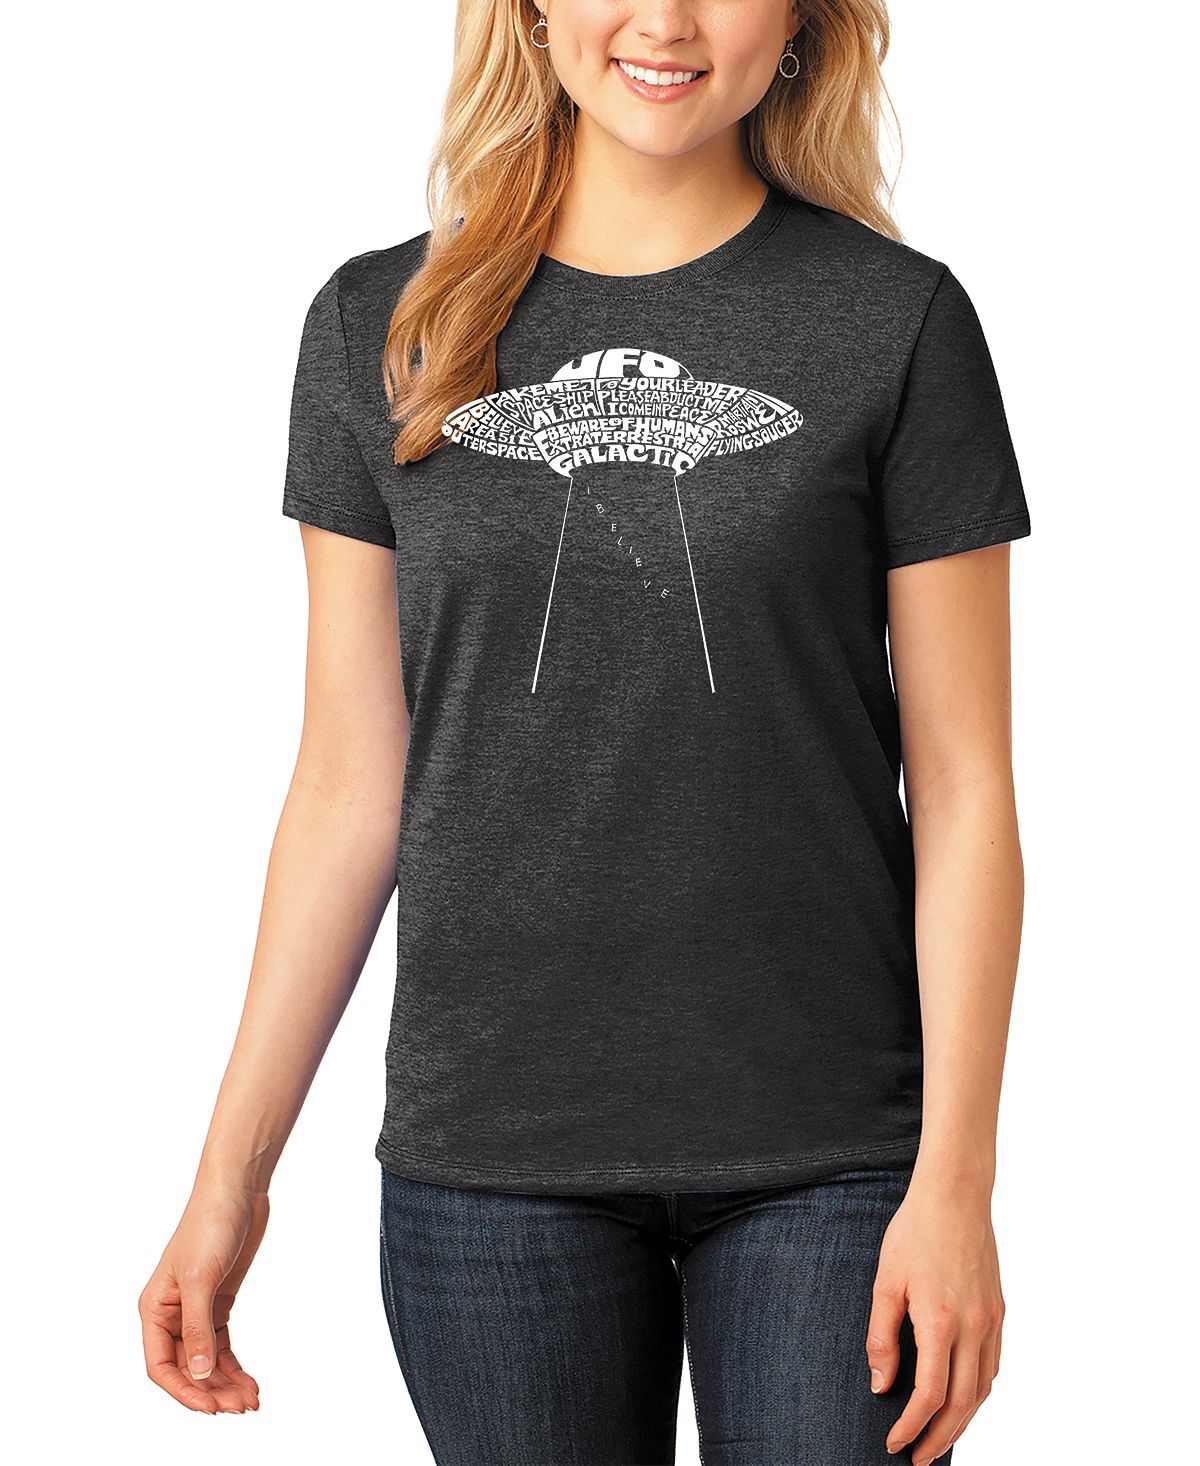 цена Женская футболка word art flying saucer ufo LA Pop Art, черный